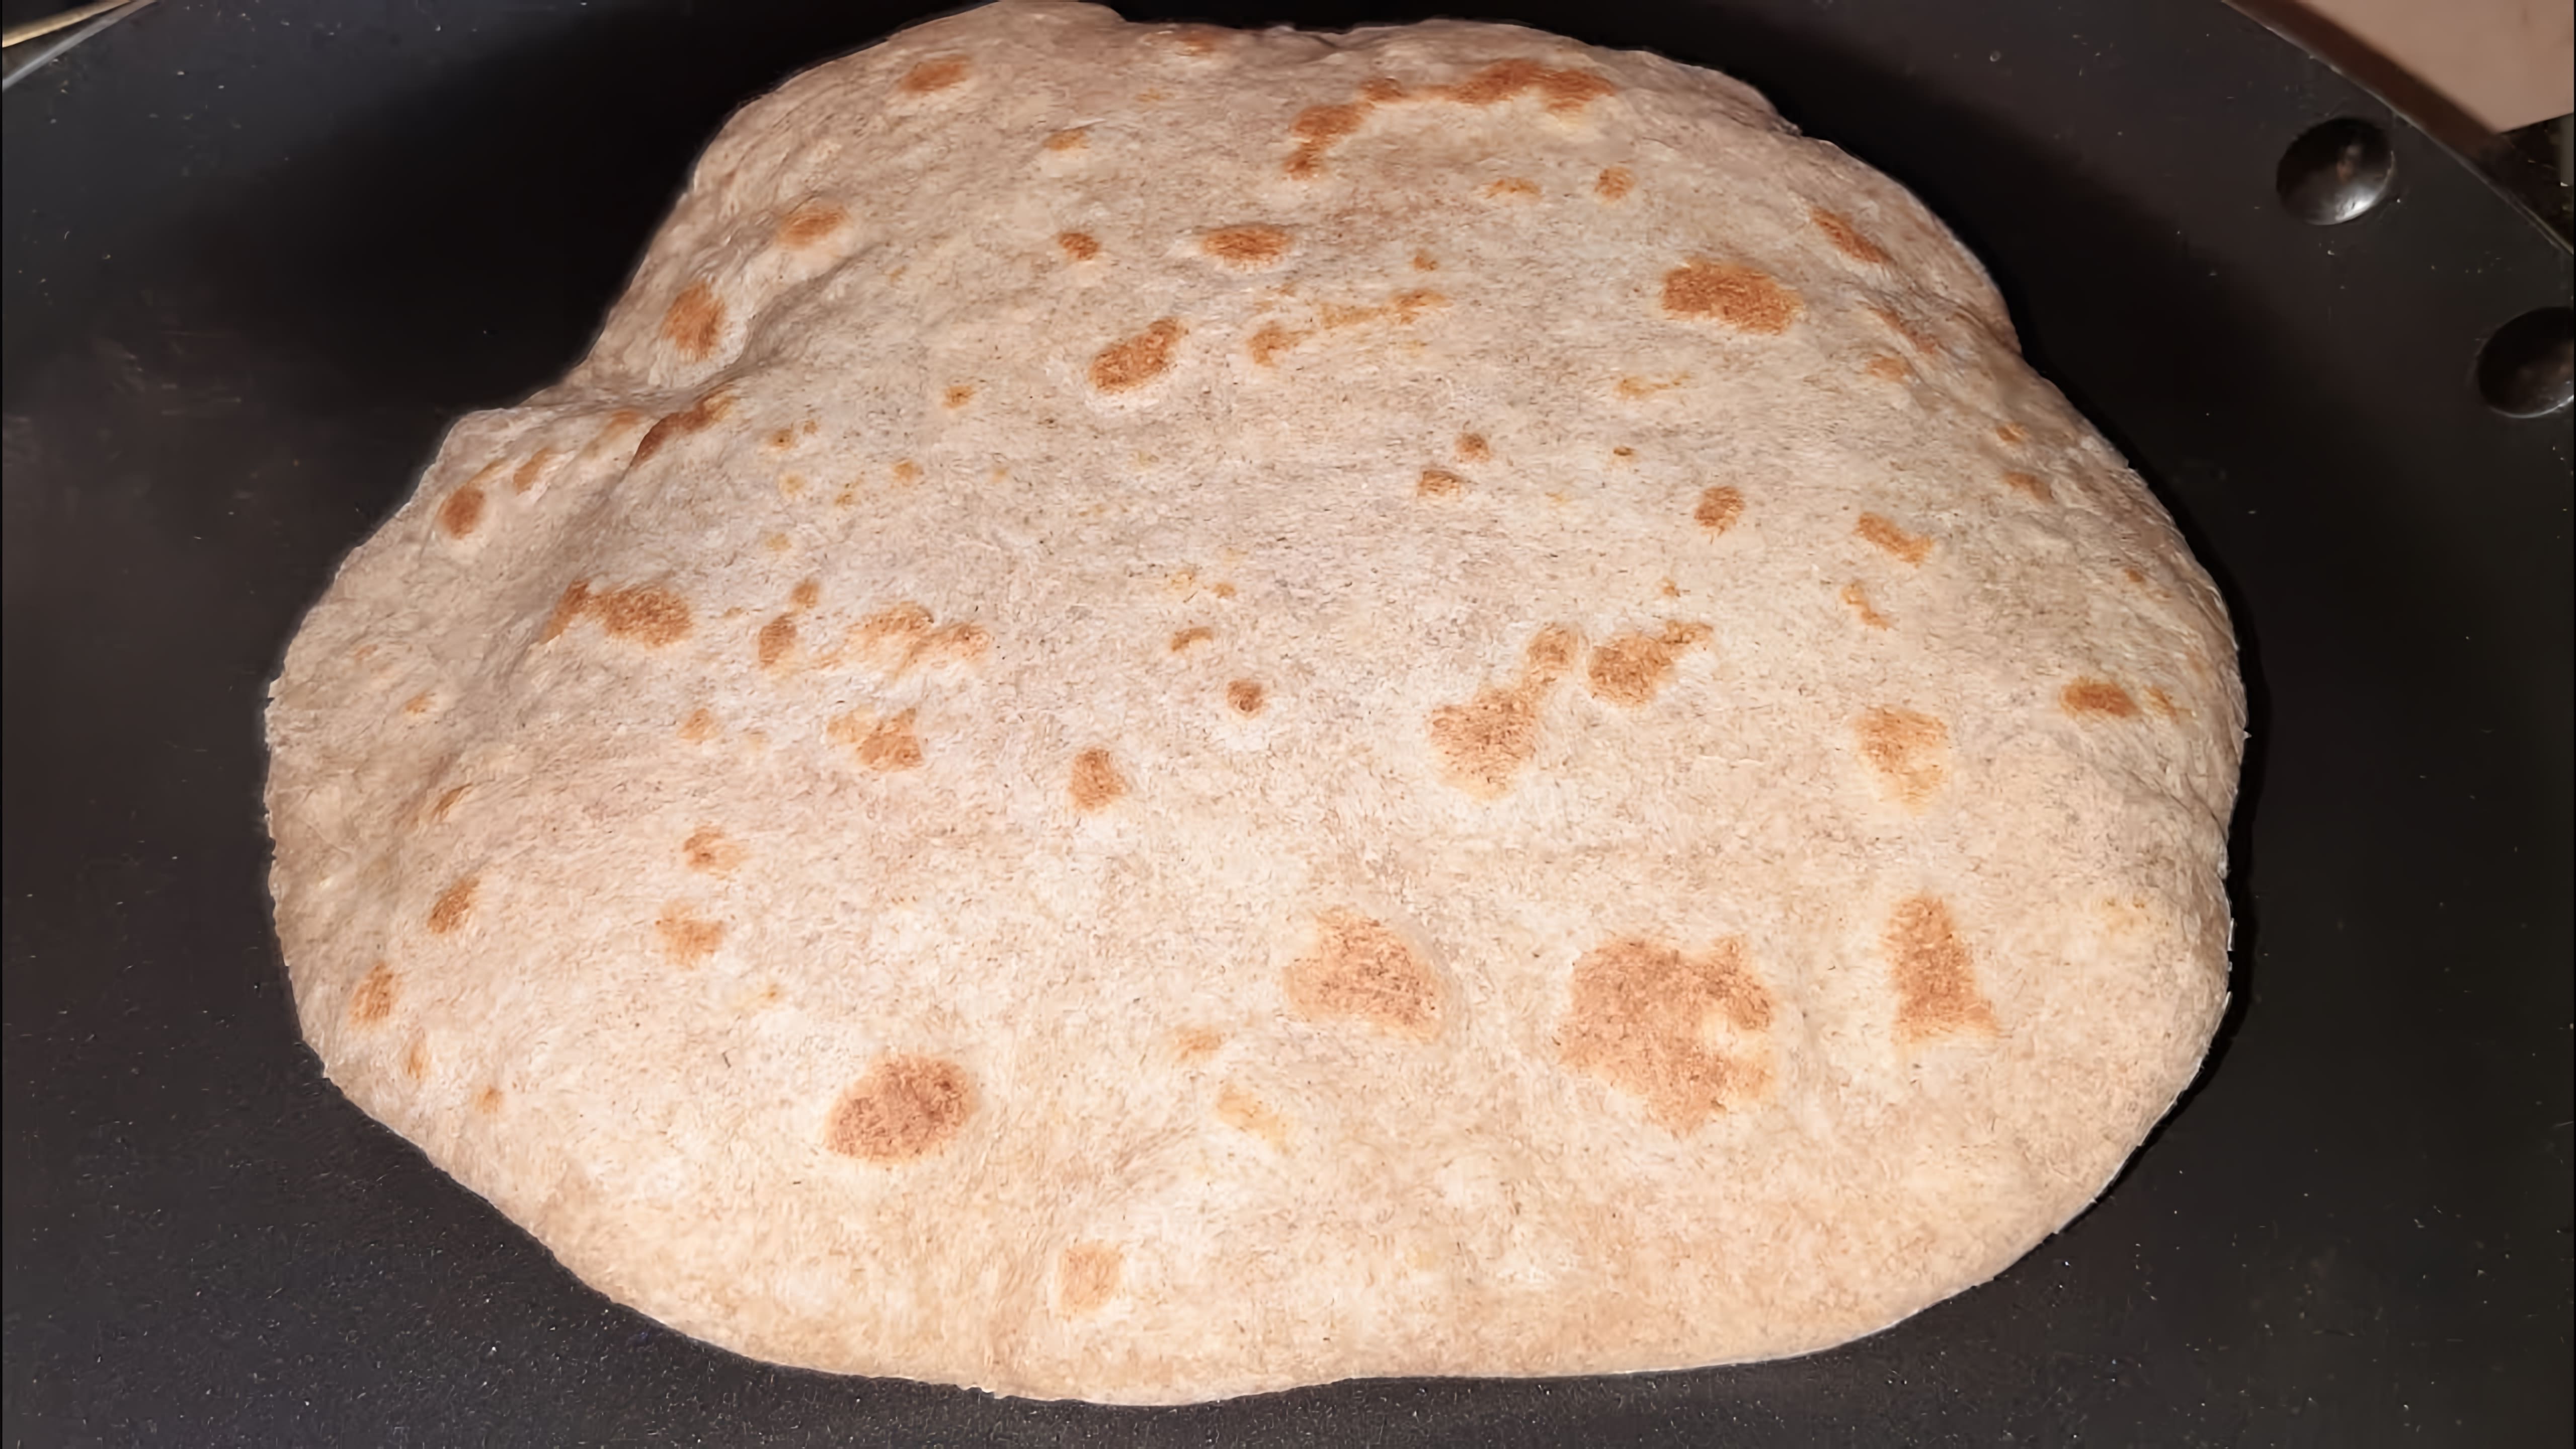 В этом видео демонстрируется процесс приготовления питы - традиционного ближневосточного хлеба